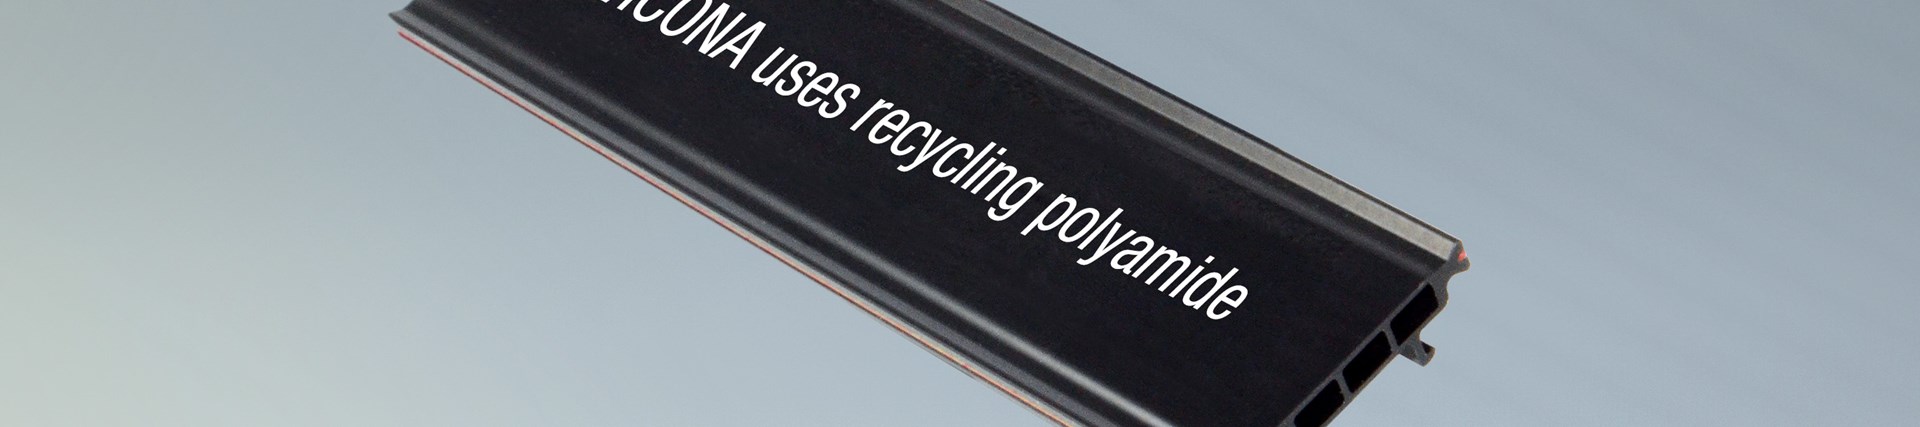 Poliamida reciclada